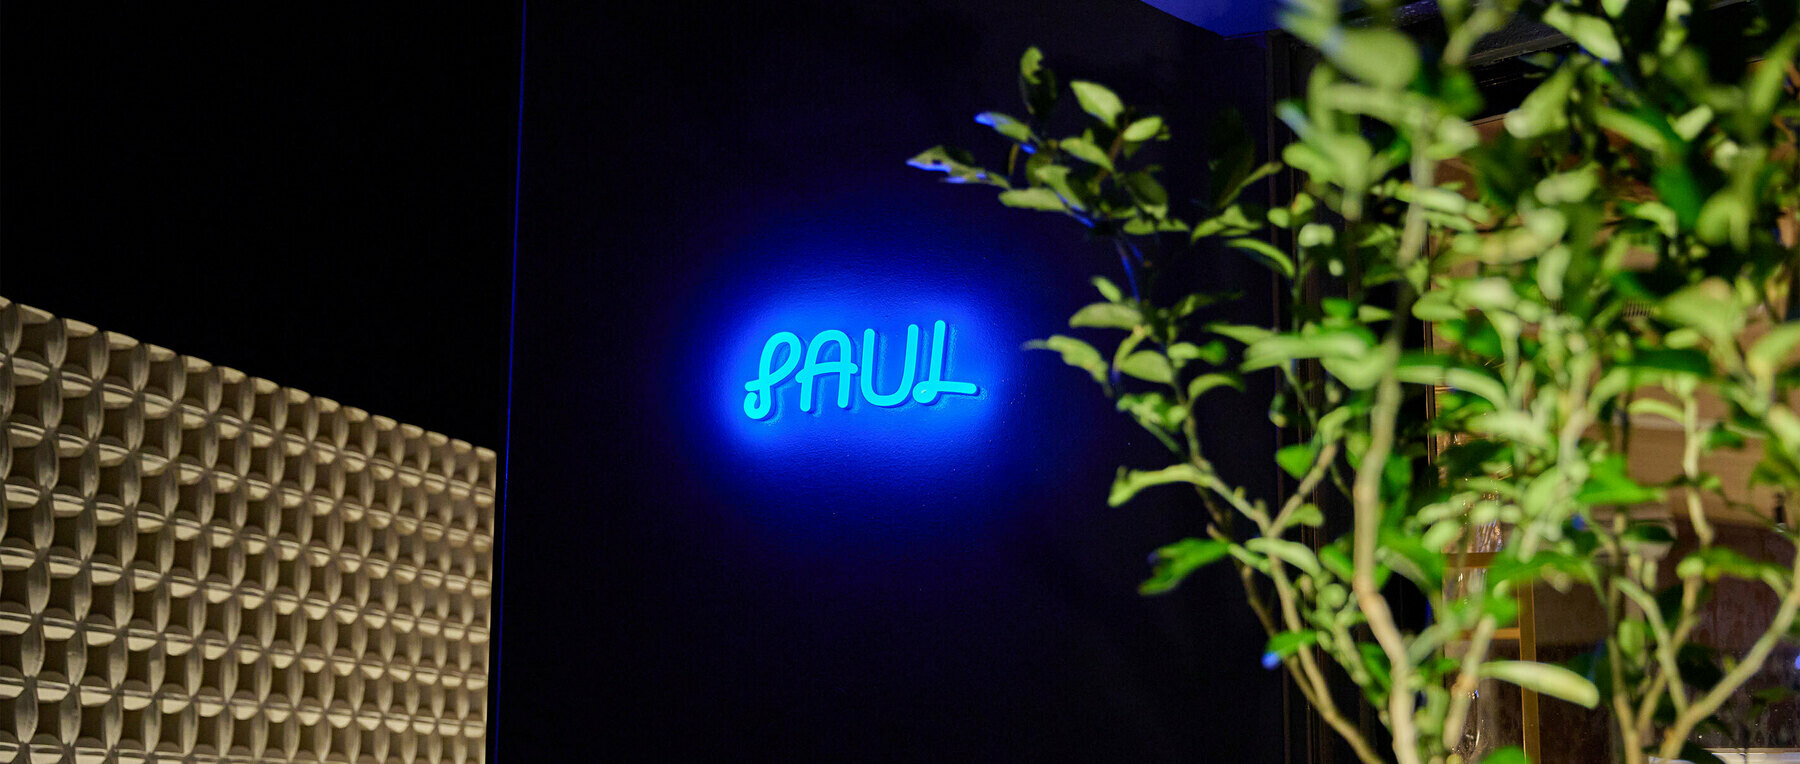 PAUL's images1